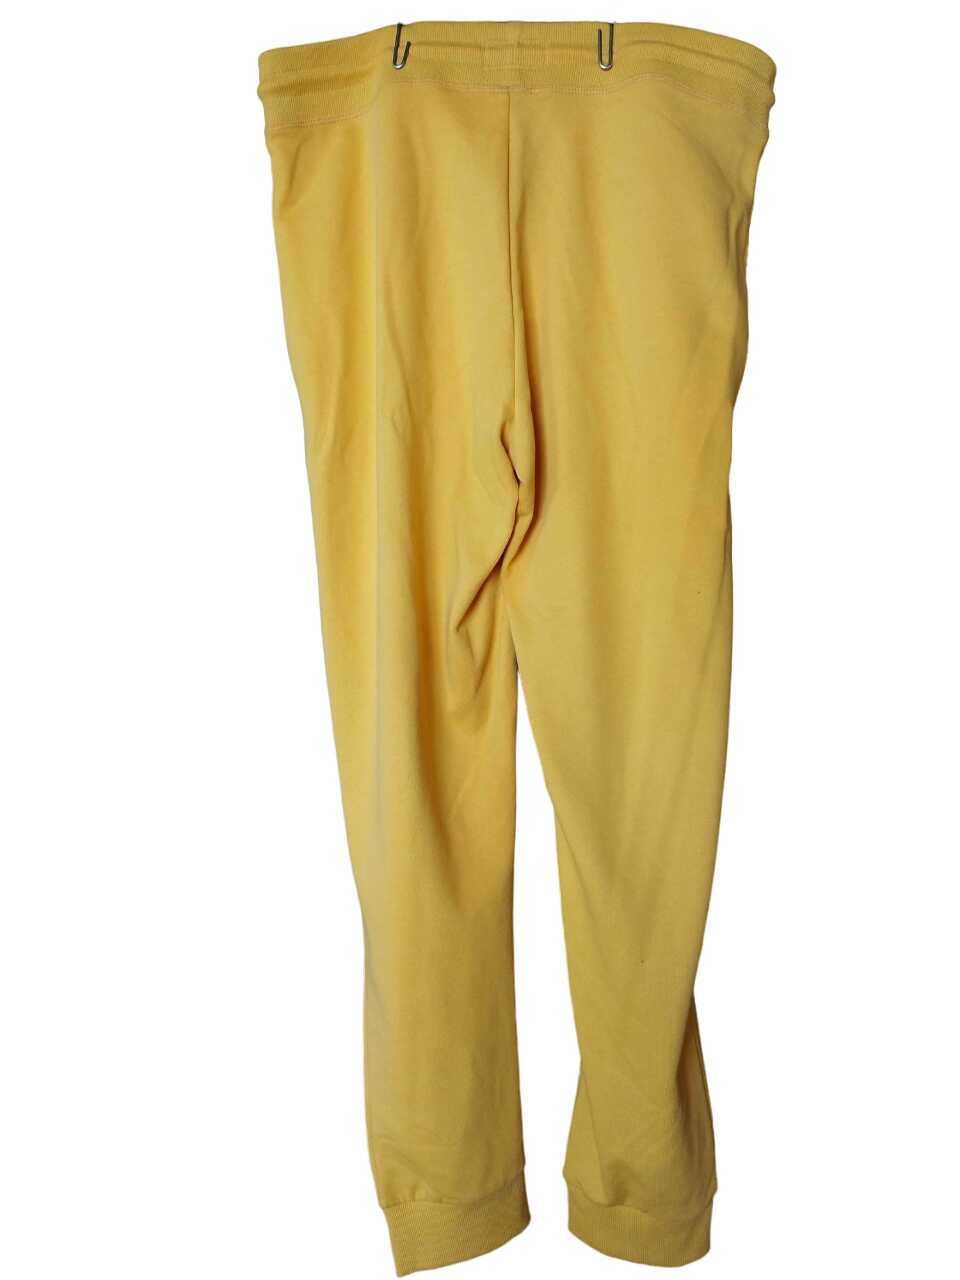 Мъжки панталон грrand & Hills, 60% памук, 40% полиестер, Жълт, XL